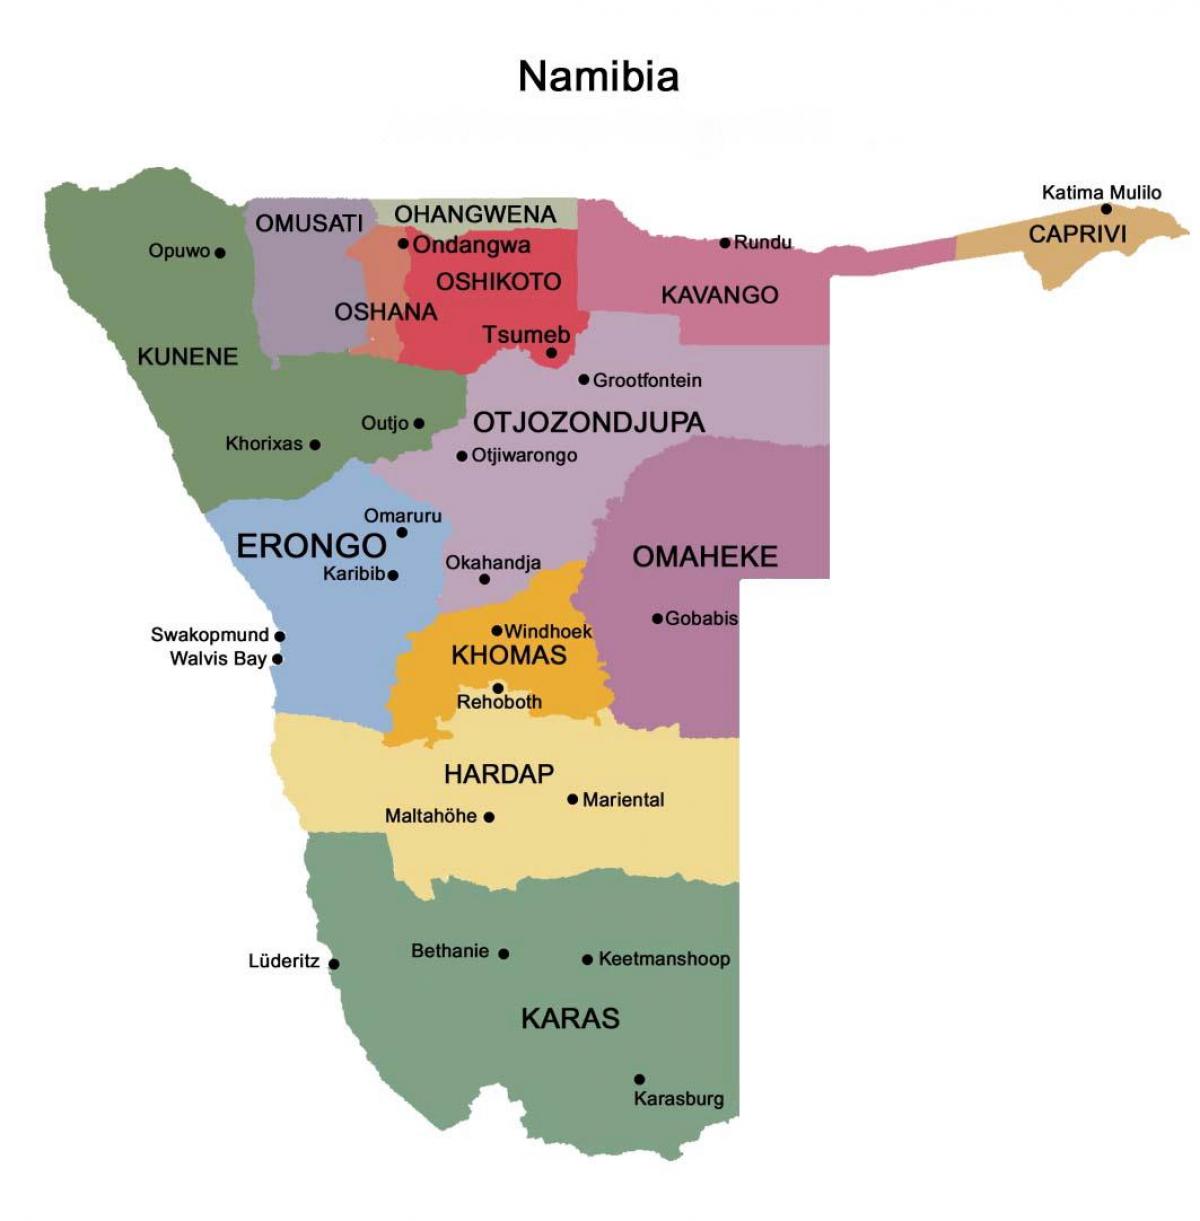 Ramani ya Namibia na mikoa